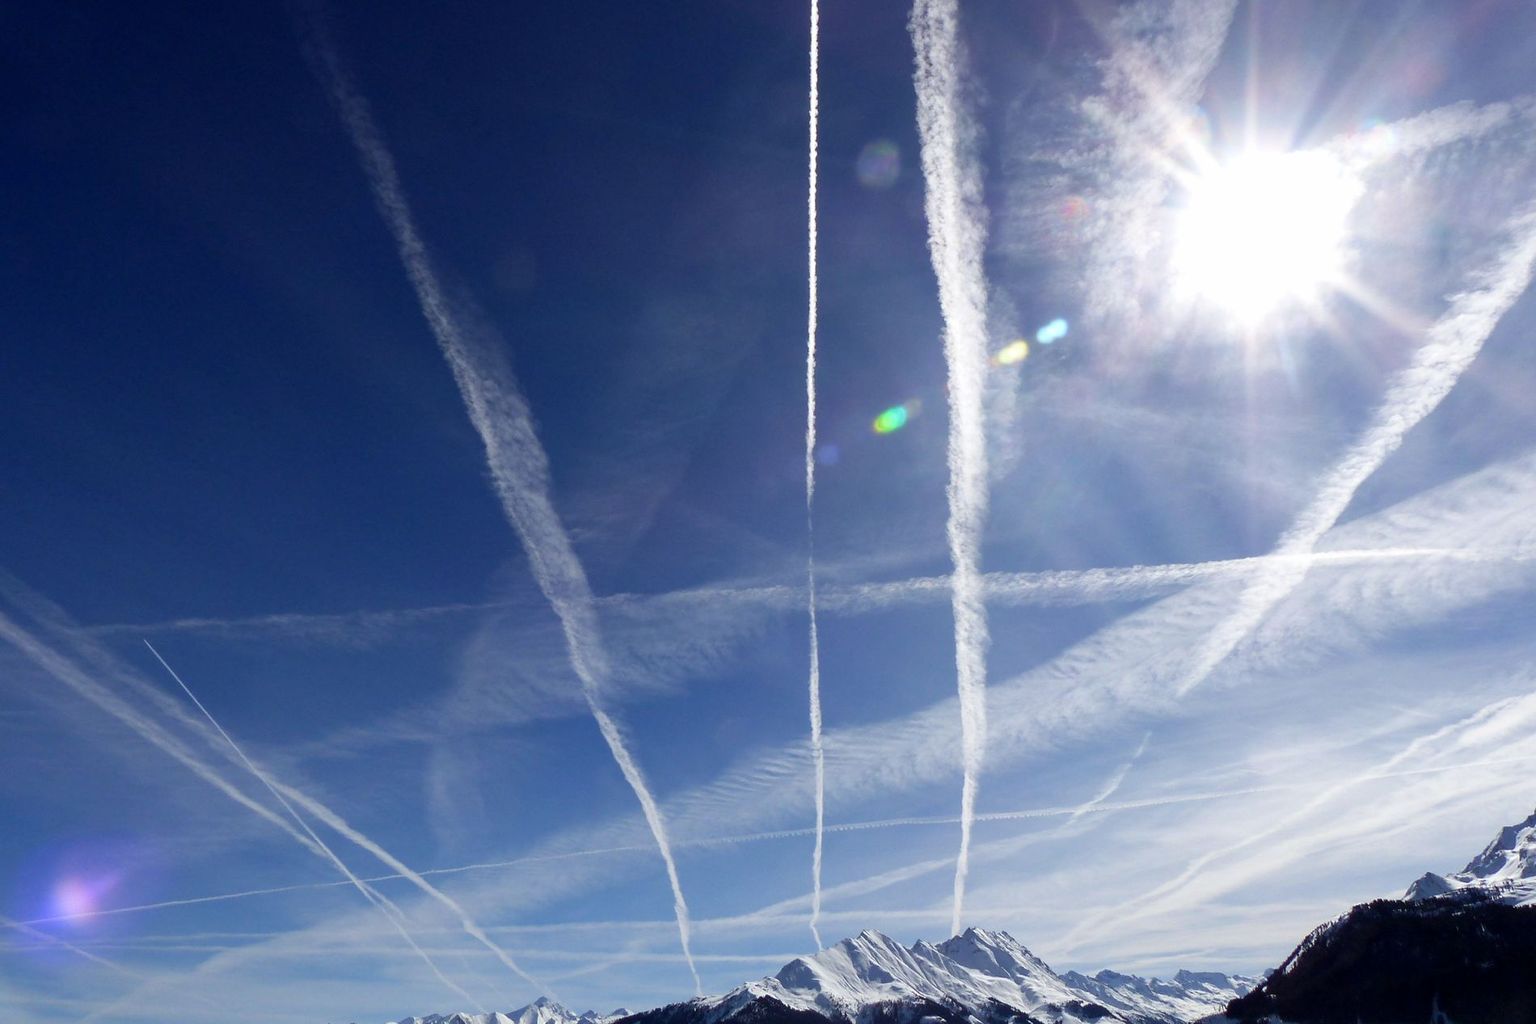 Avant le COVID-19, les avions étaient nombreux à sillonner le ciel suisse. Si le trafic aérien doit contribuer à la protection du climat, il ne faut pas qu’il revienne à son ancien niveau. Photo : Pixabay